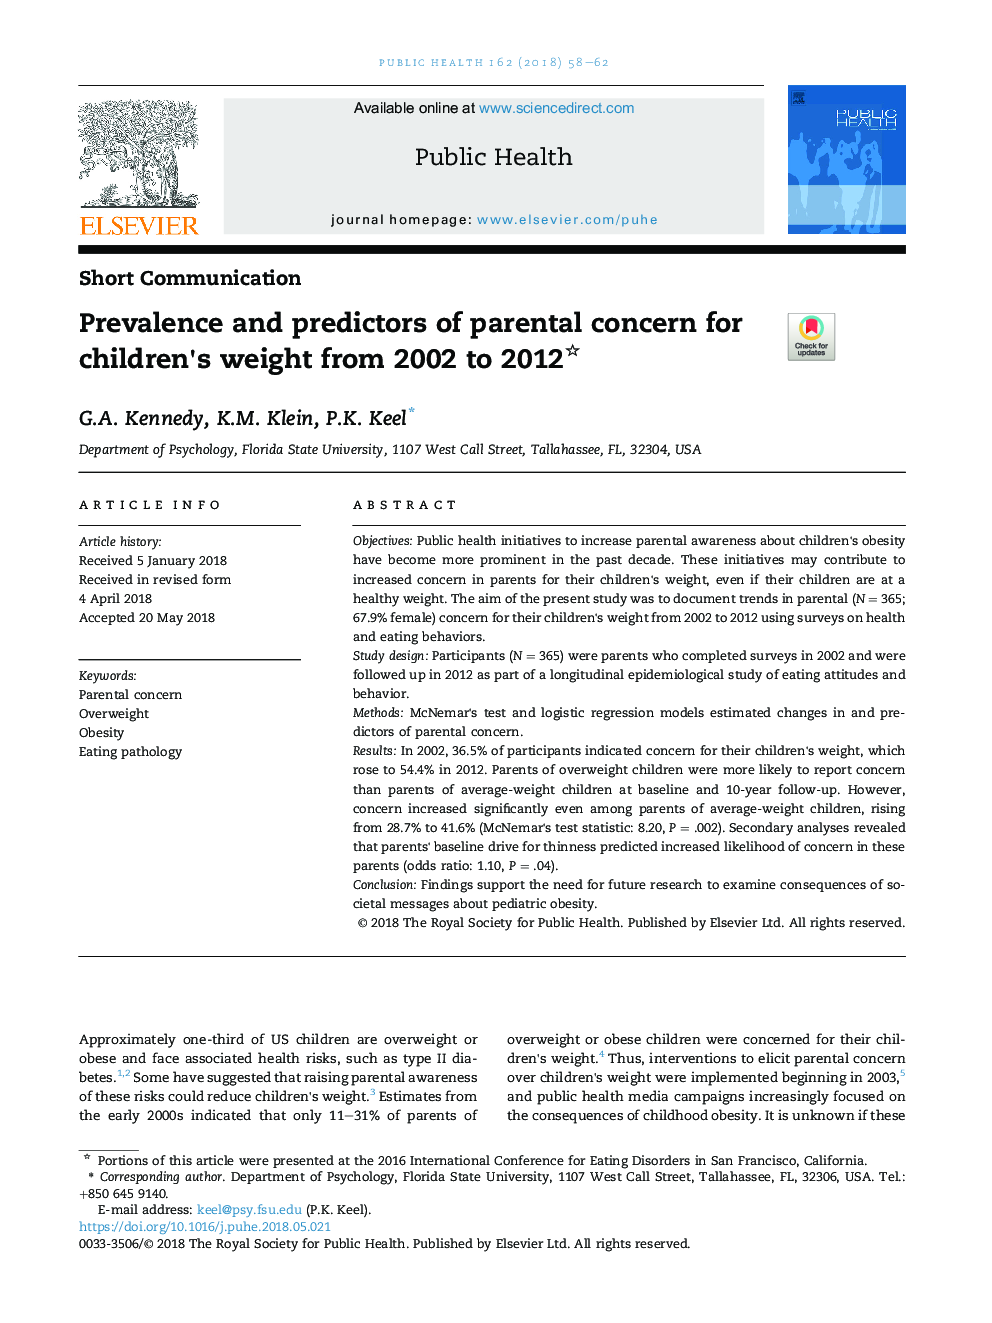 شیوع و پیش بینی کننده نگرانی والدین در مورد وزن کودکان از سال 2002 تا 2012 